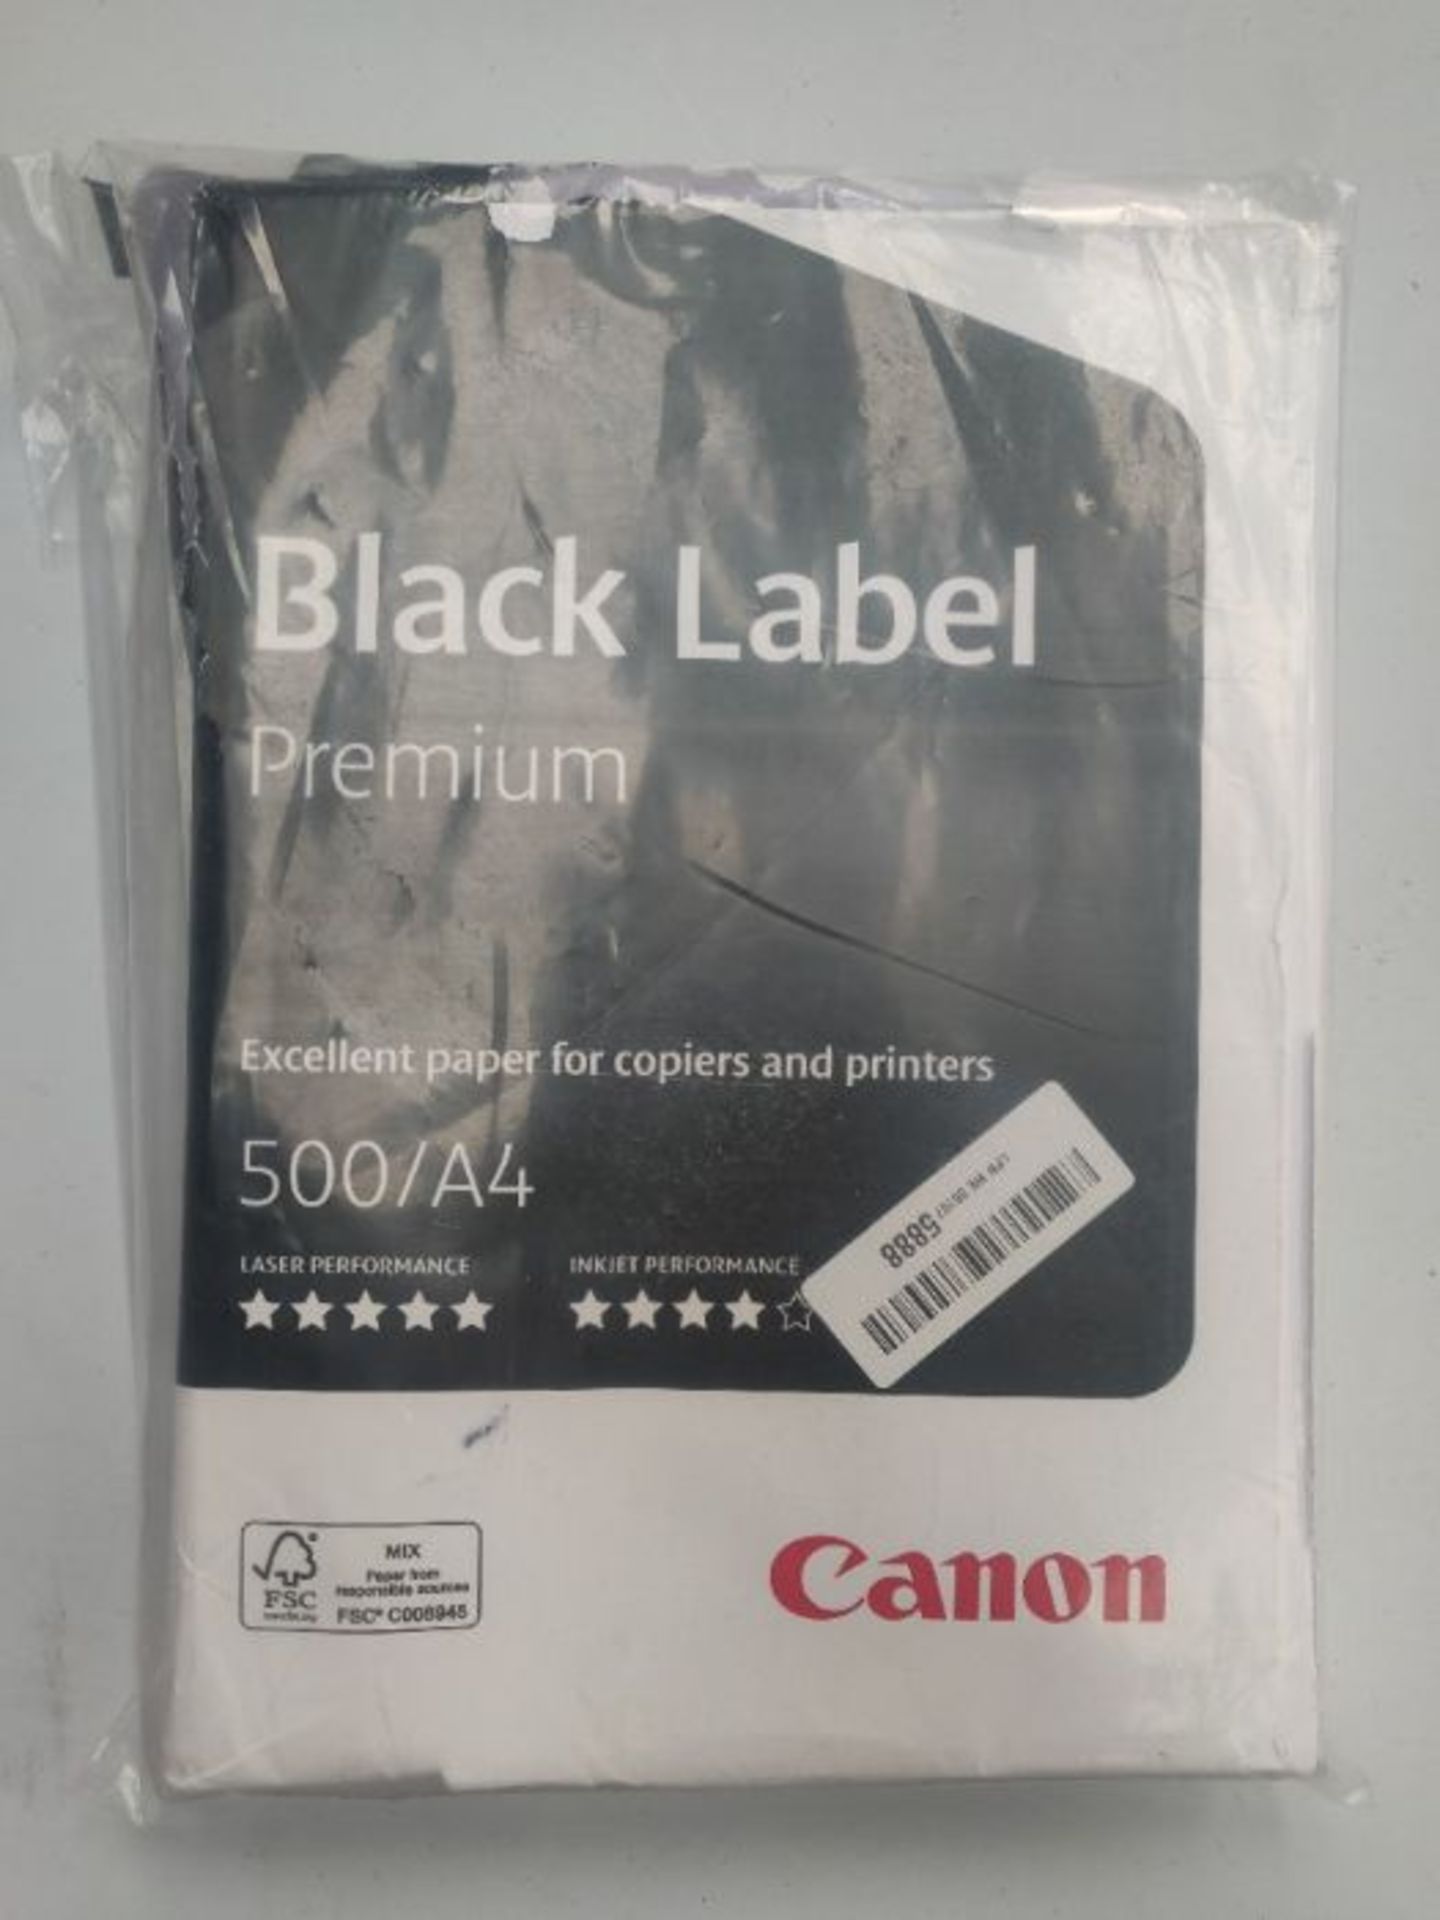 Canon A4 80gsm Premium Label Copier/Printer Paper - White 96603554 - Image 2 of 2